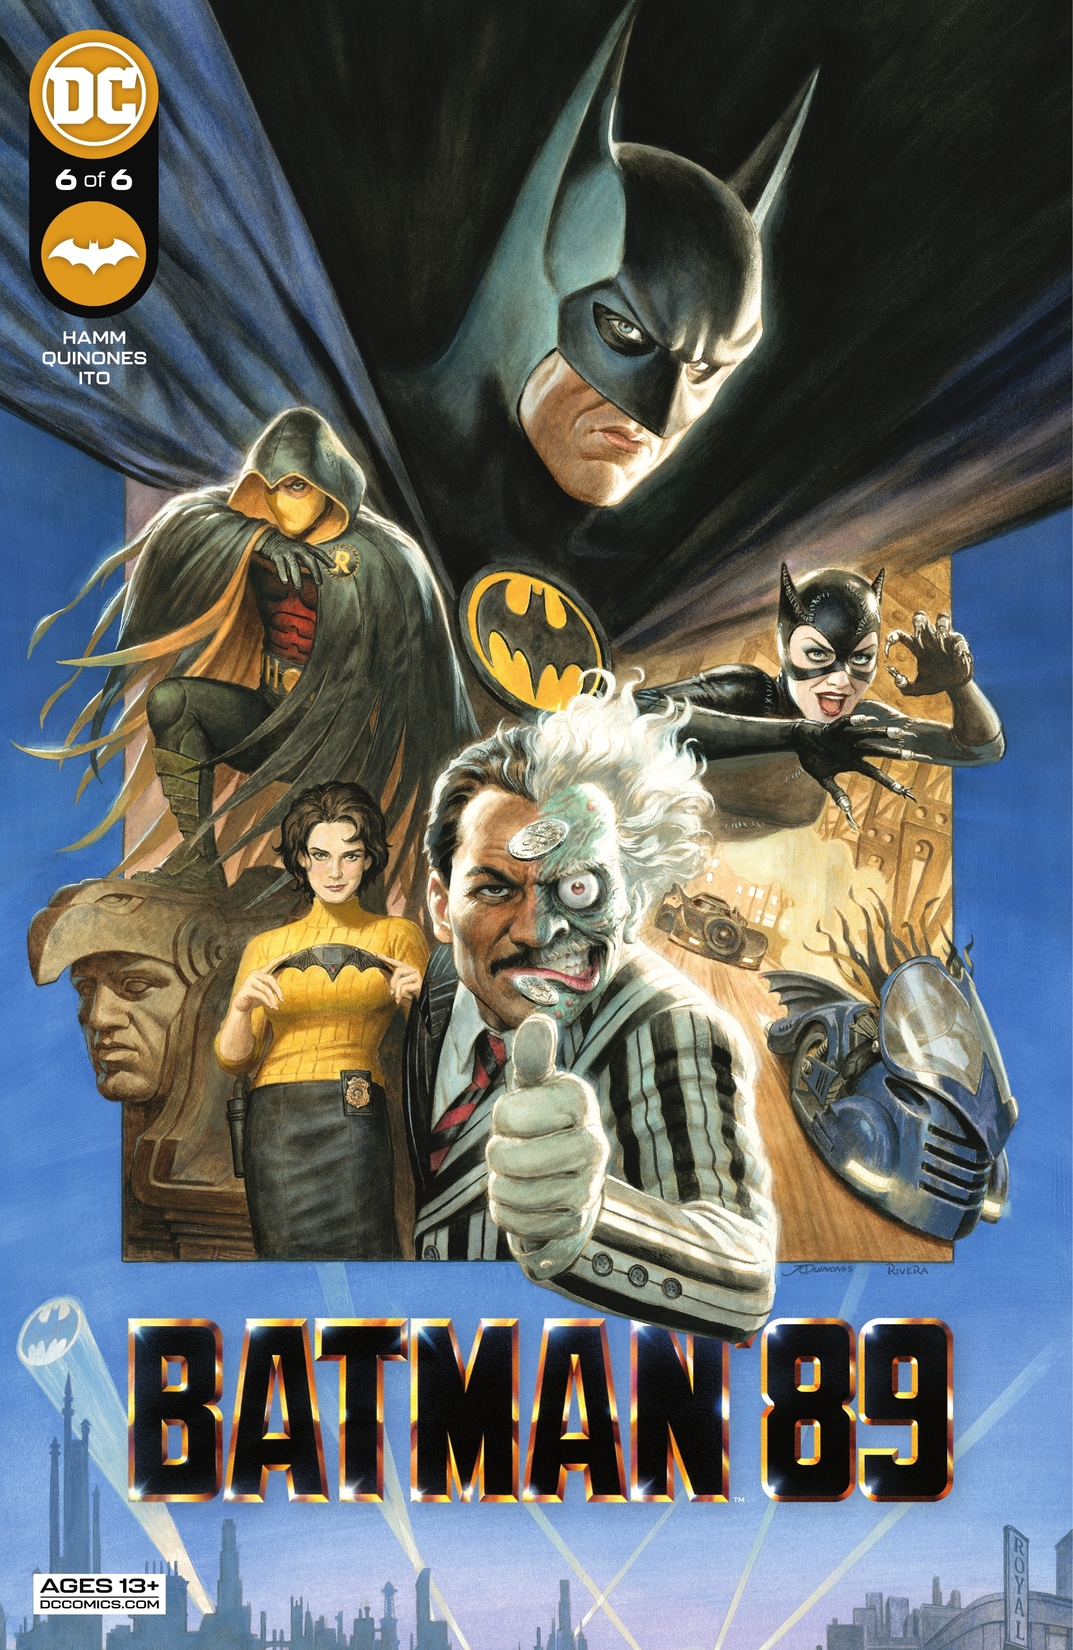 Batman '89 #6 preview images